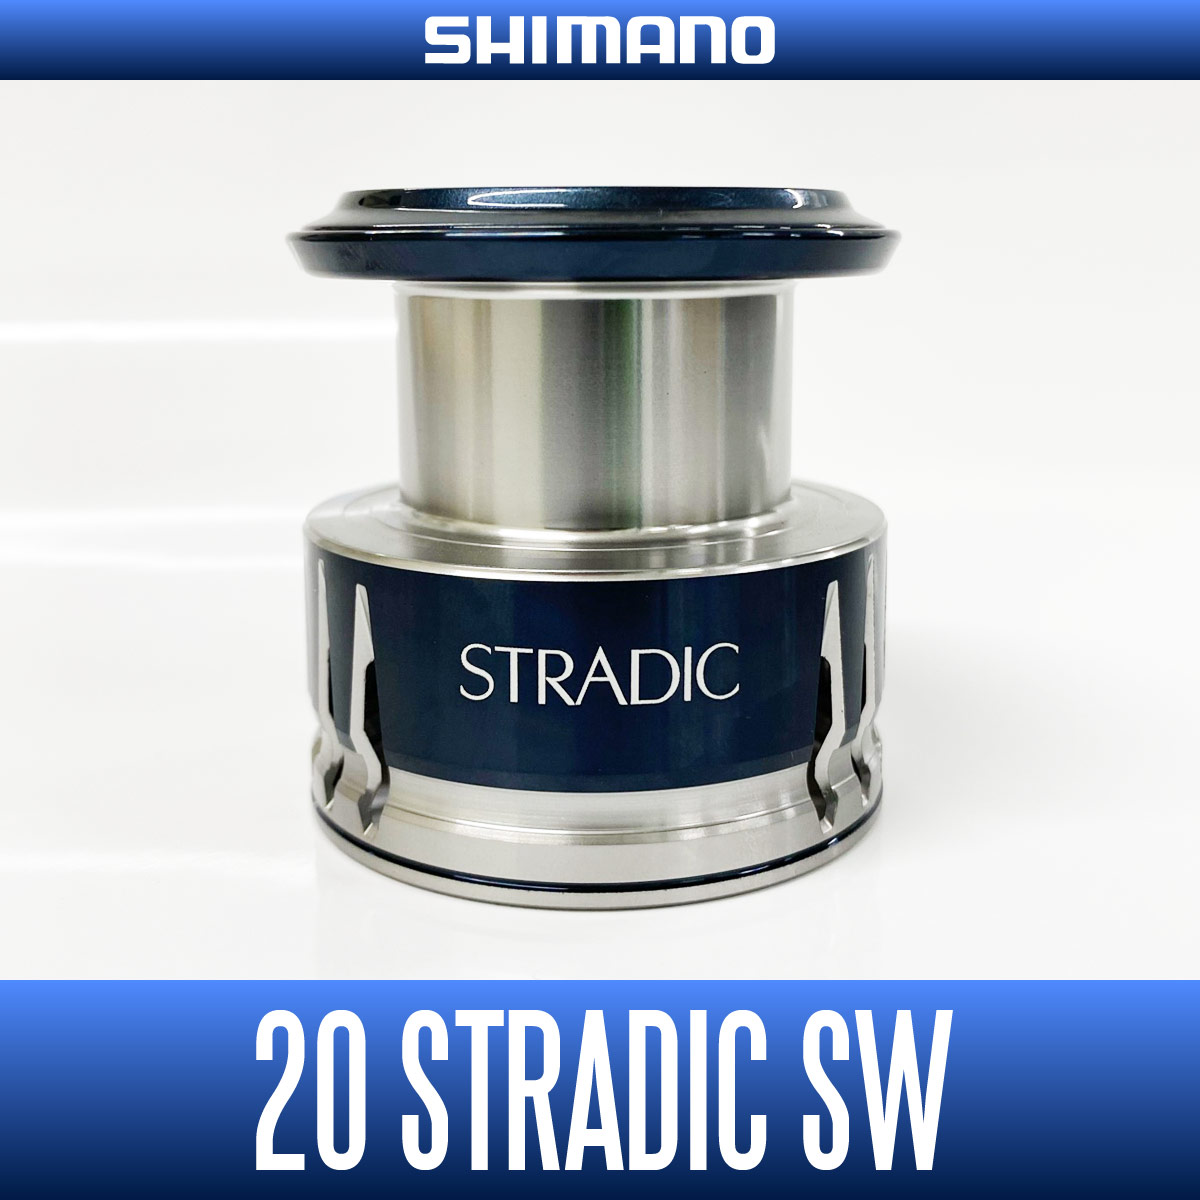 経典ブランド シマノ ストラディックci4 予備スプール付き 2500s 